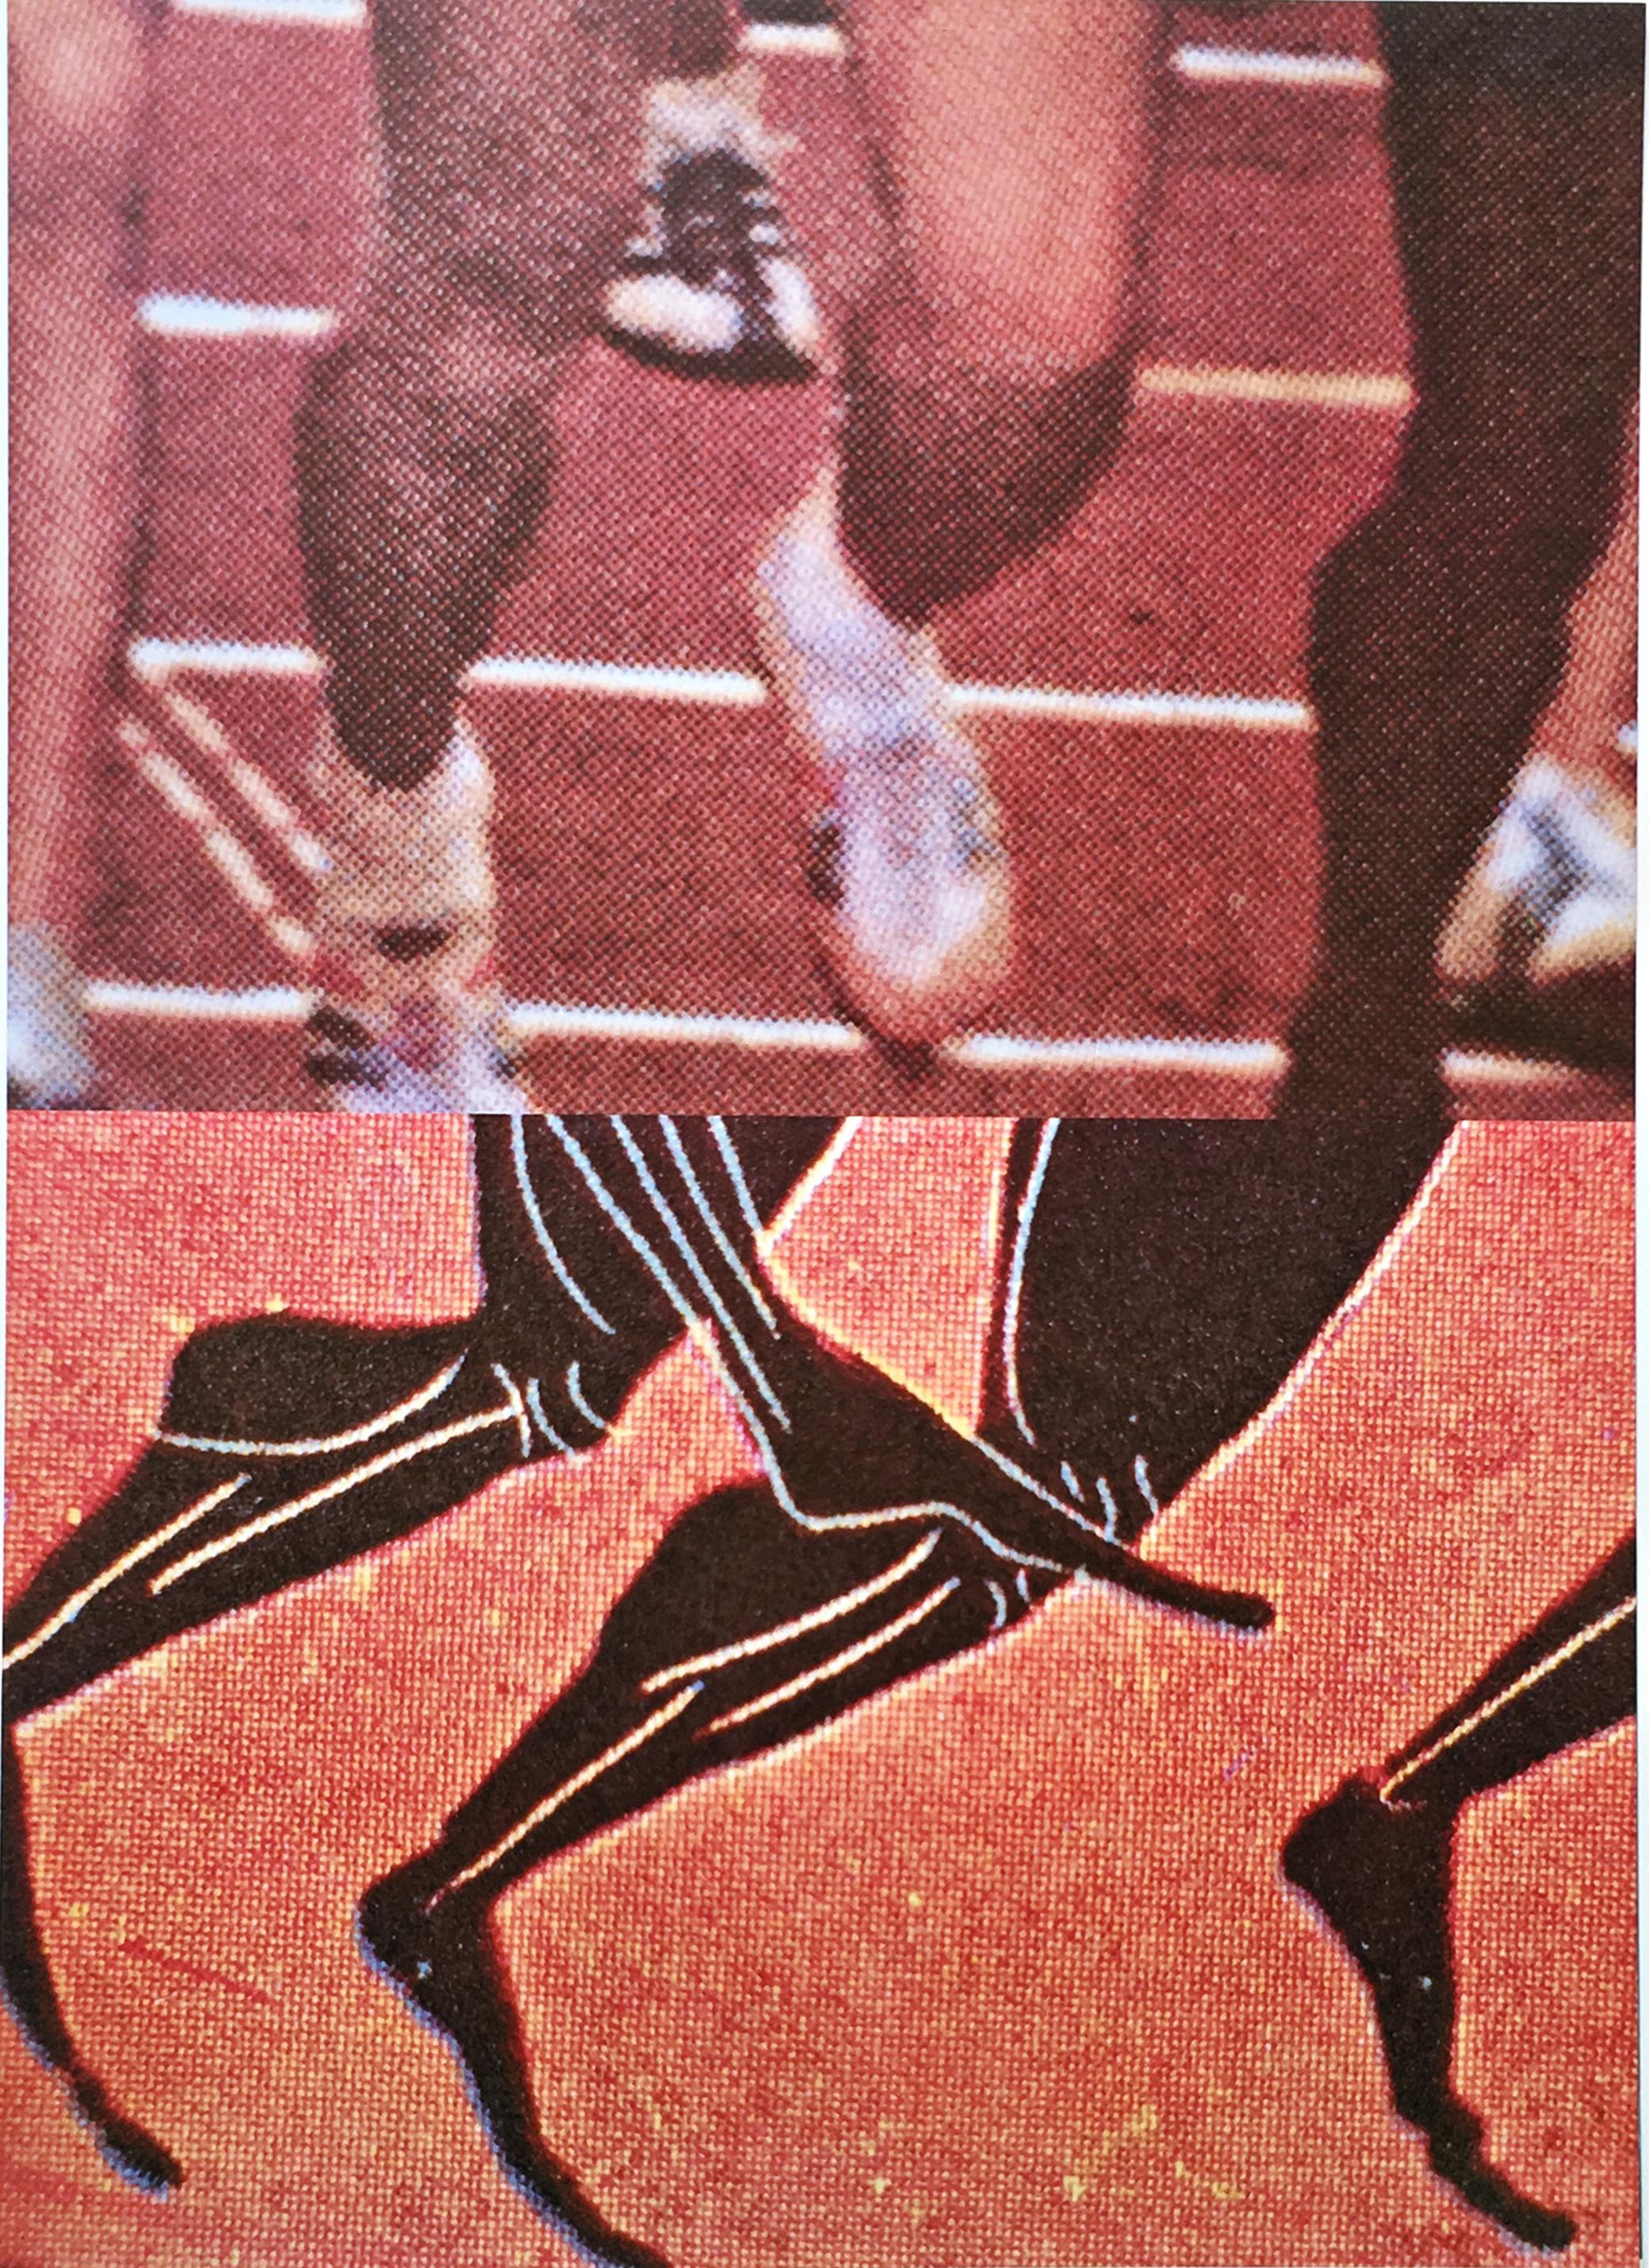 Les Sprinters, pour les Jeux olympiques de Los Angeles de 1984, avec certificat d'authenticité - Print de John Baldessari